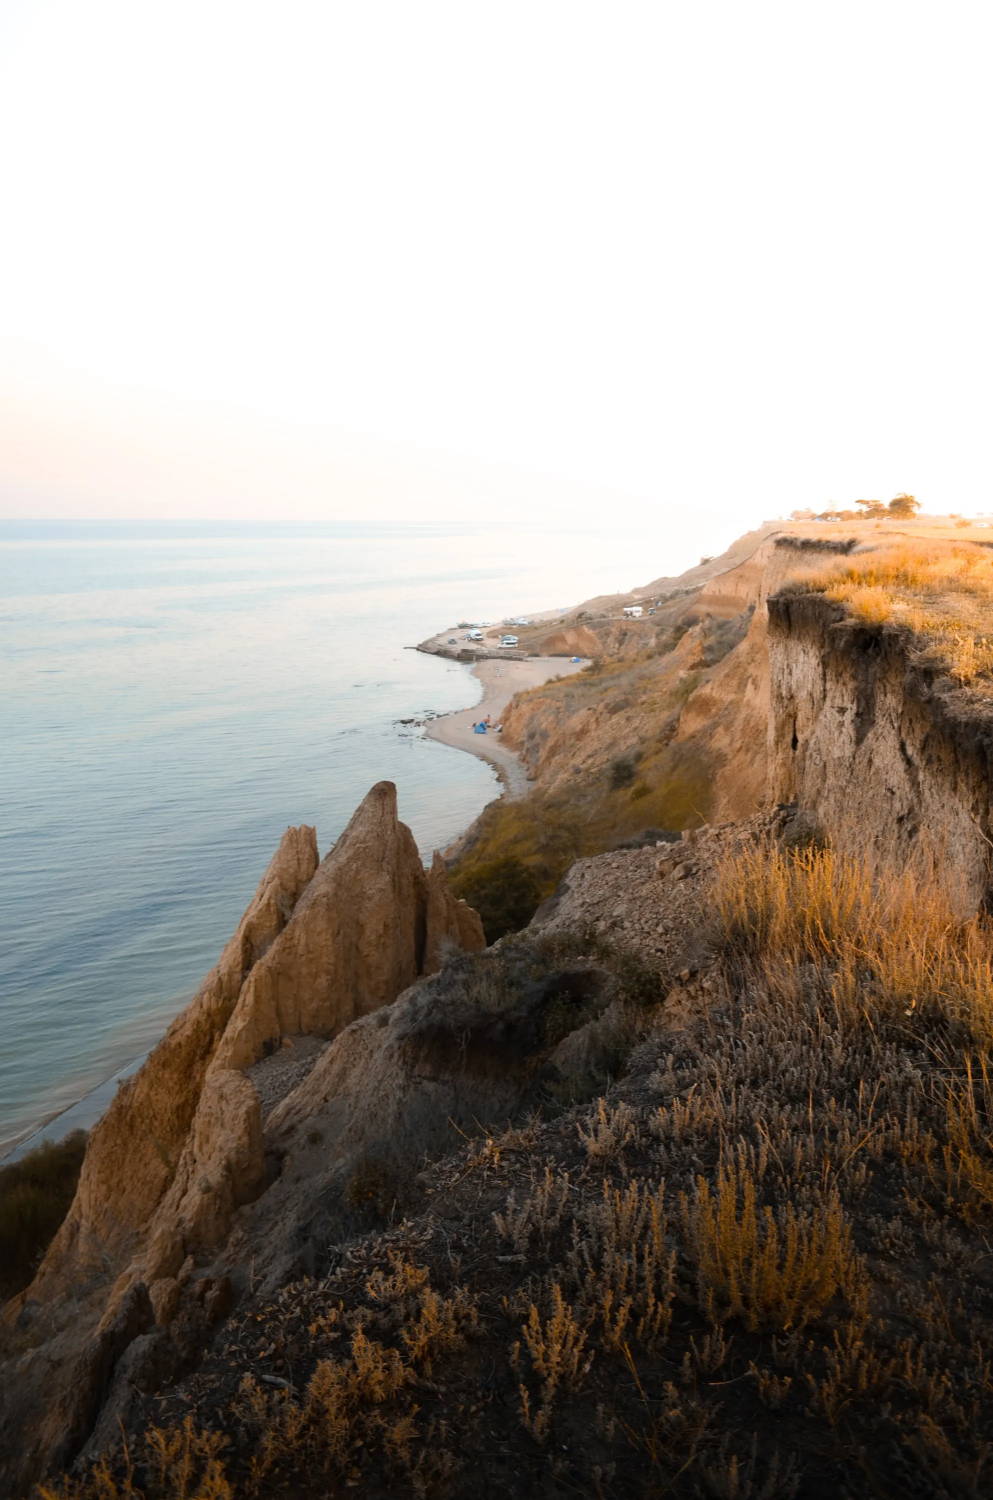 Rocky cliff overlooking the ocean